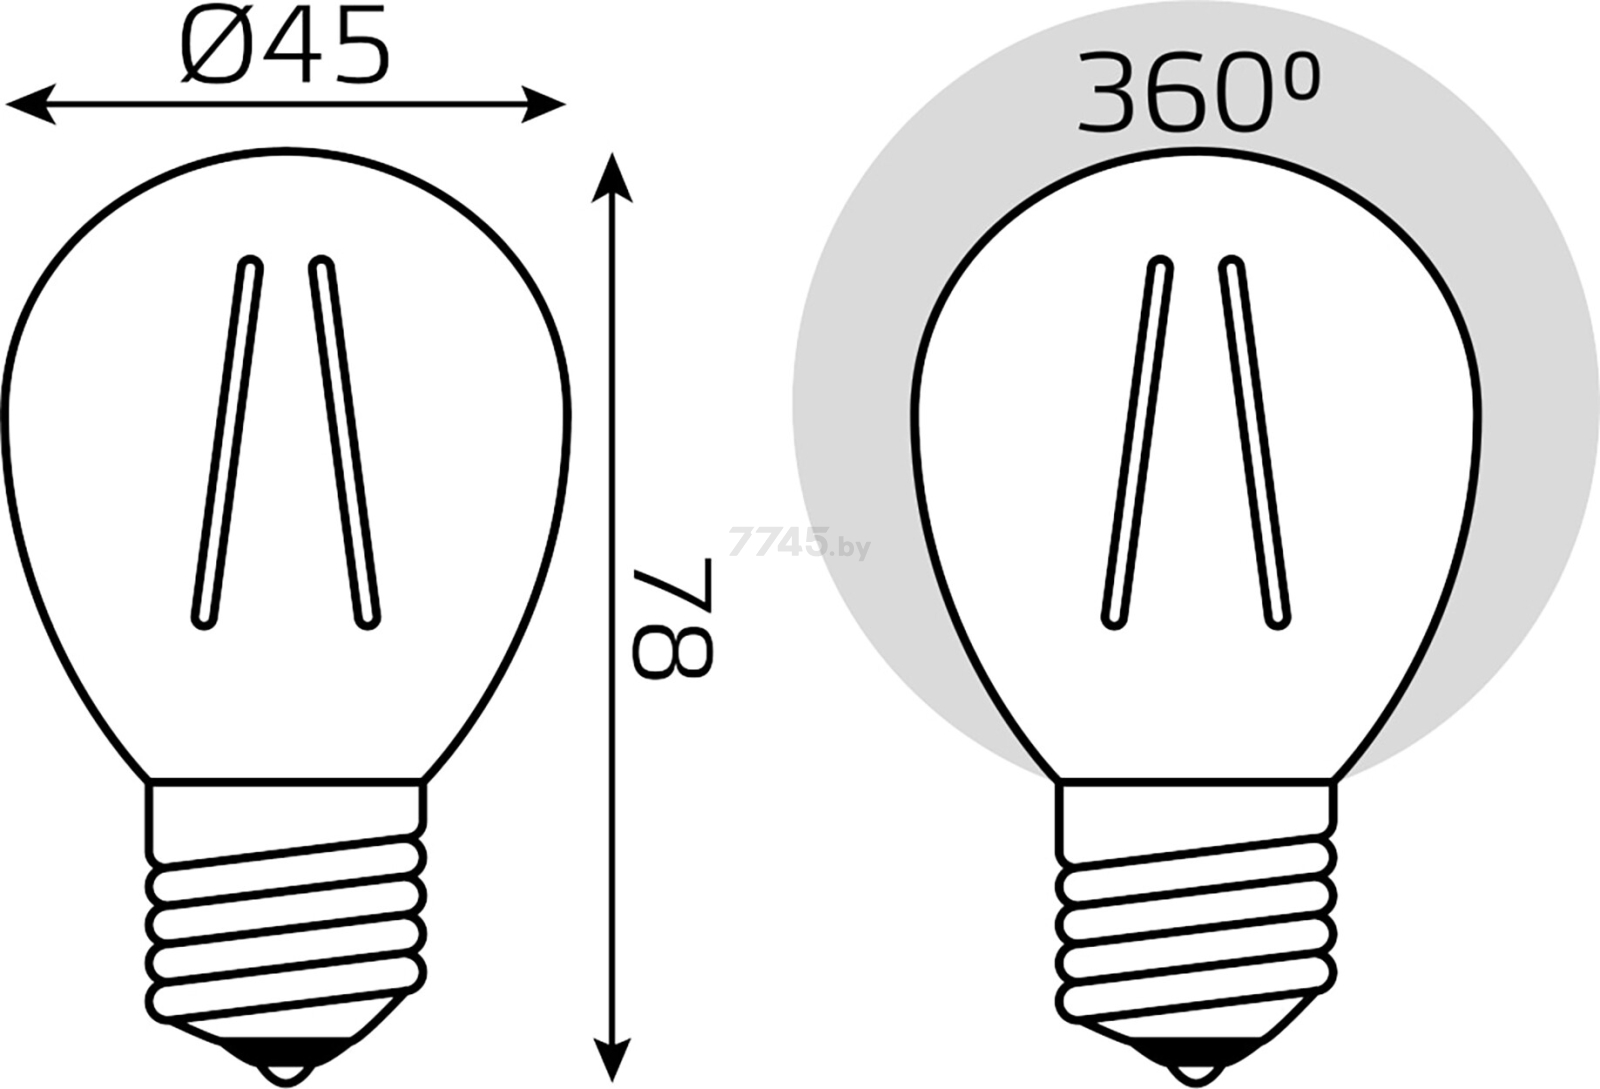 Лампа светодиодная филаментная Е27 GAUSS 13 Вт 2700К (105802113) - Фото 6